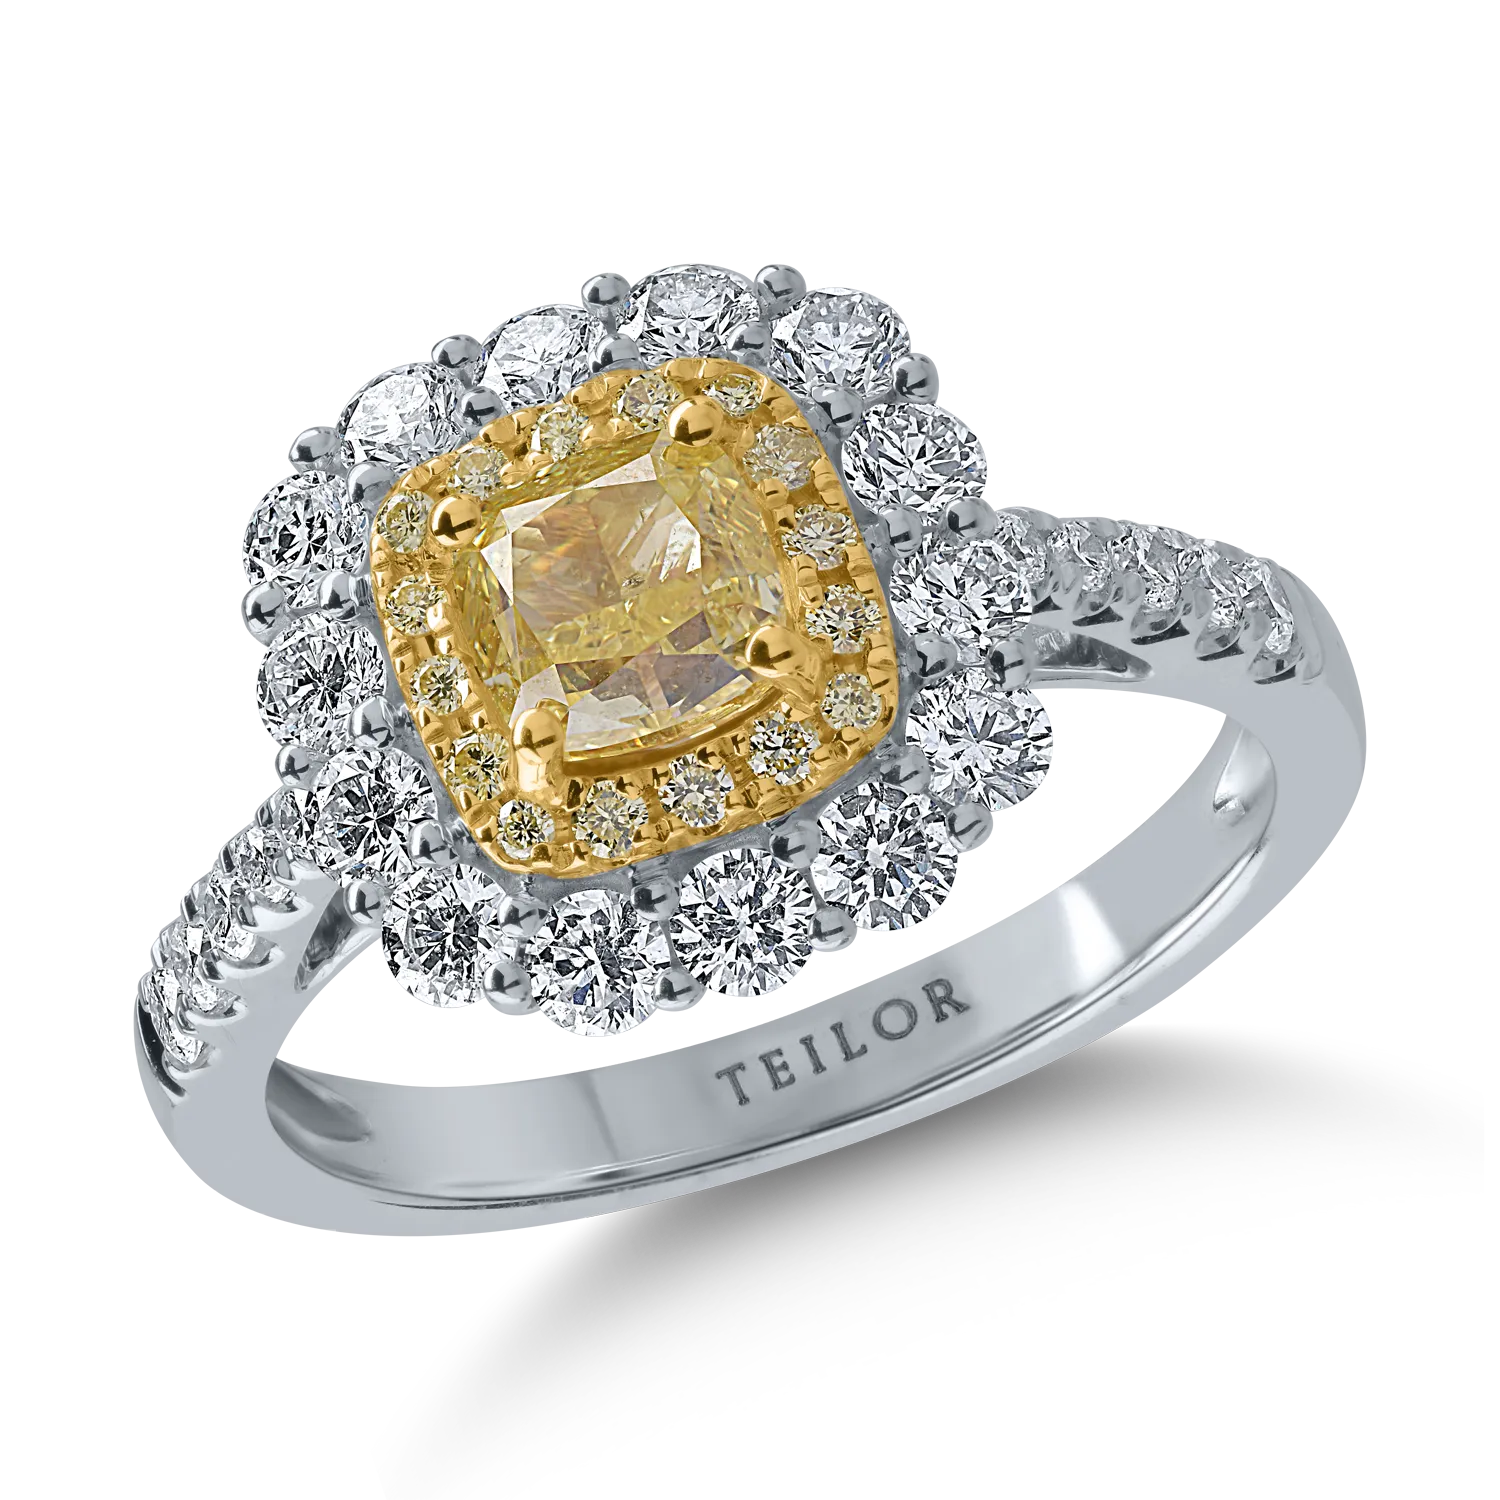 Pierścionek z biało-żółtego złota z żółtymi diamentami o masie 1.12ct i przezroczystymi diamentami o masie 0.88ct